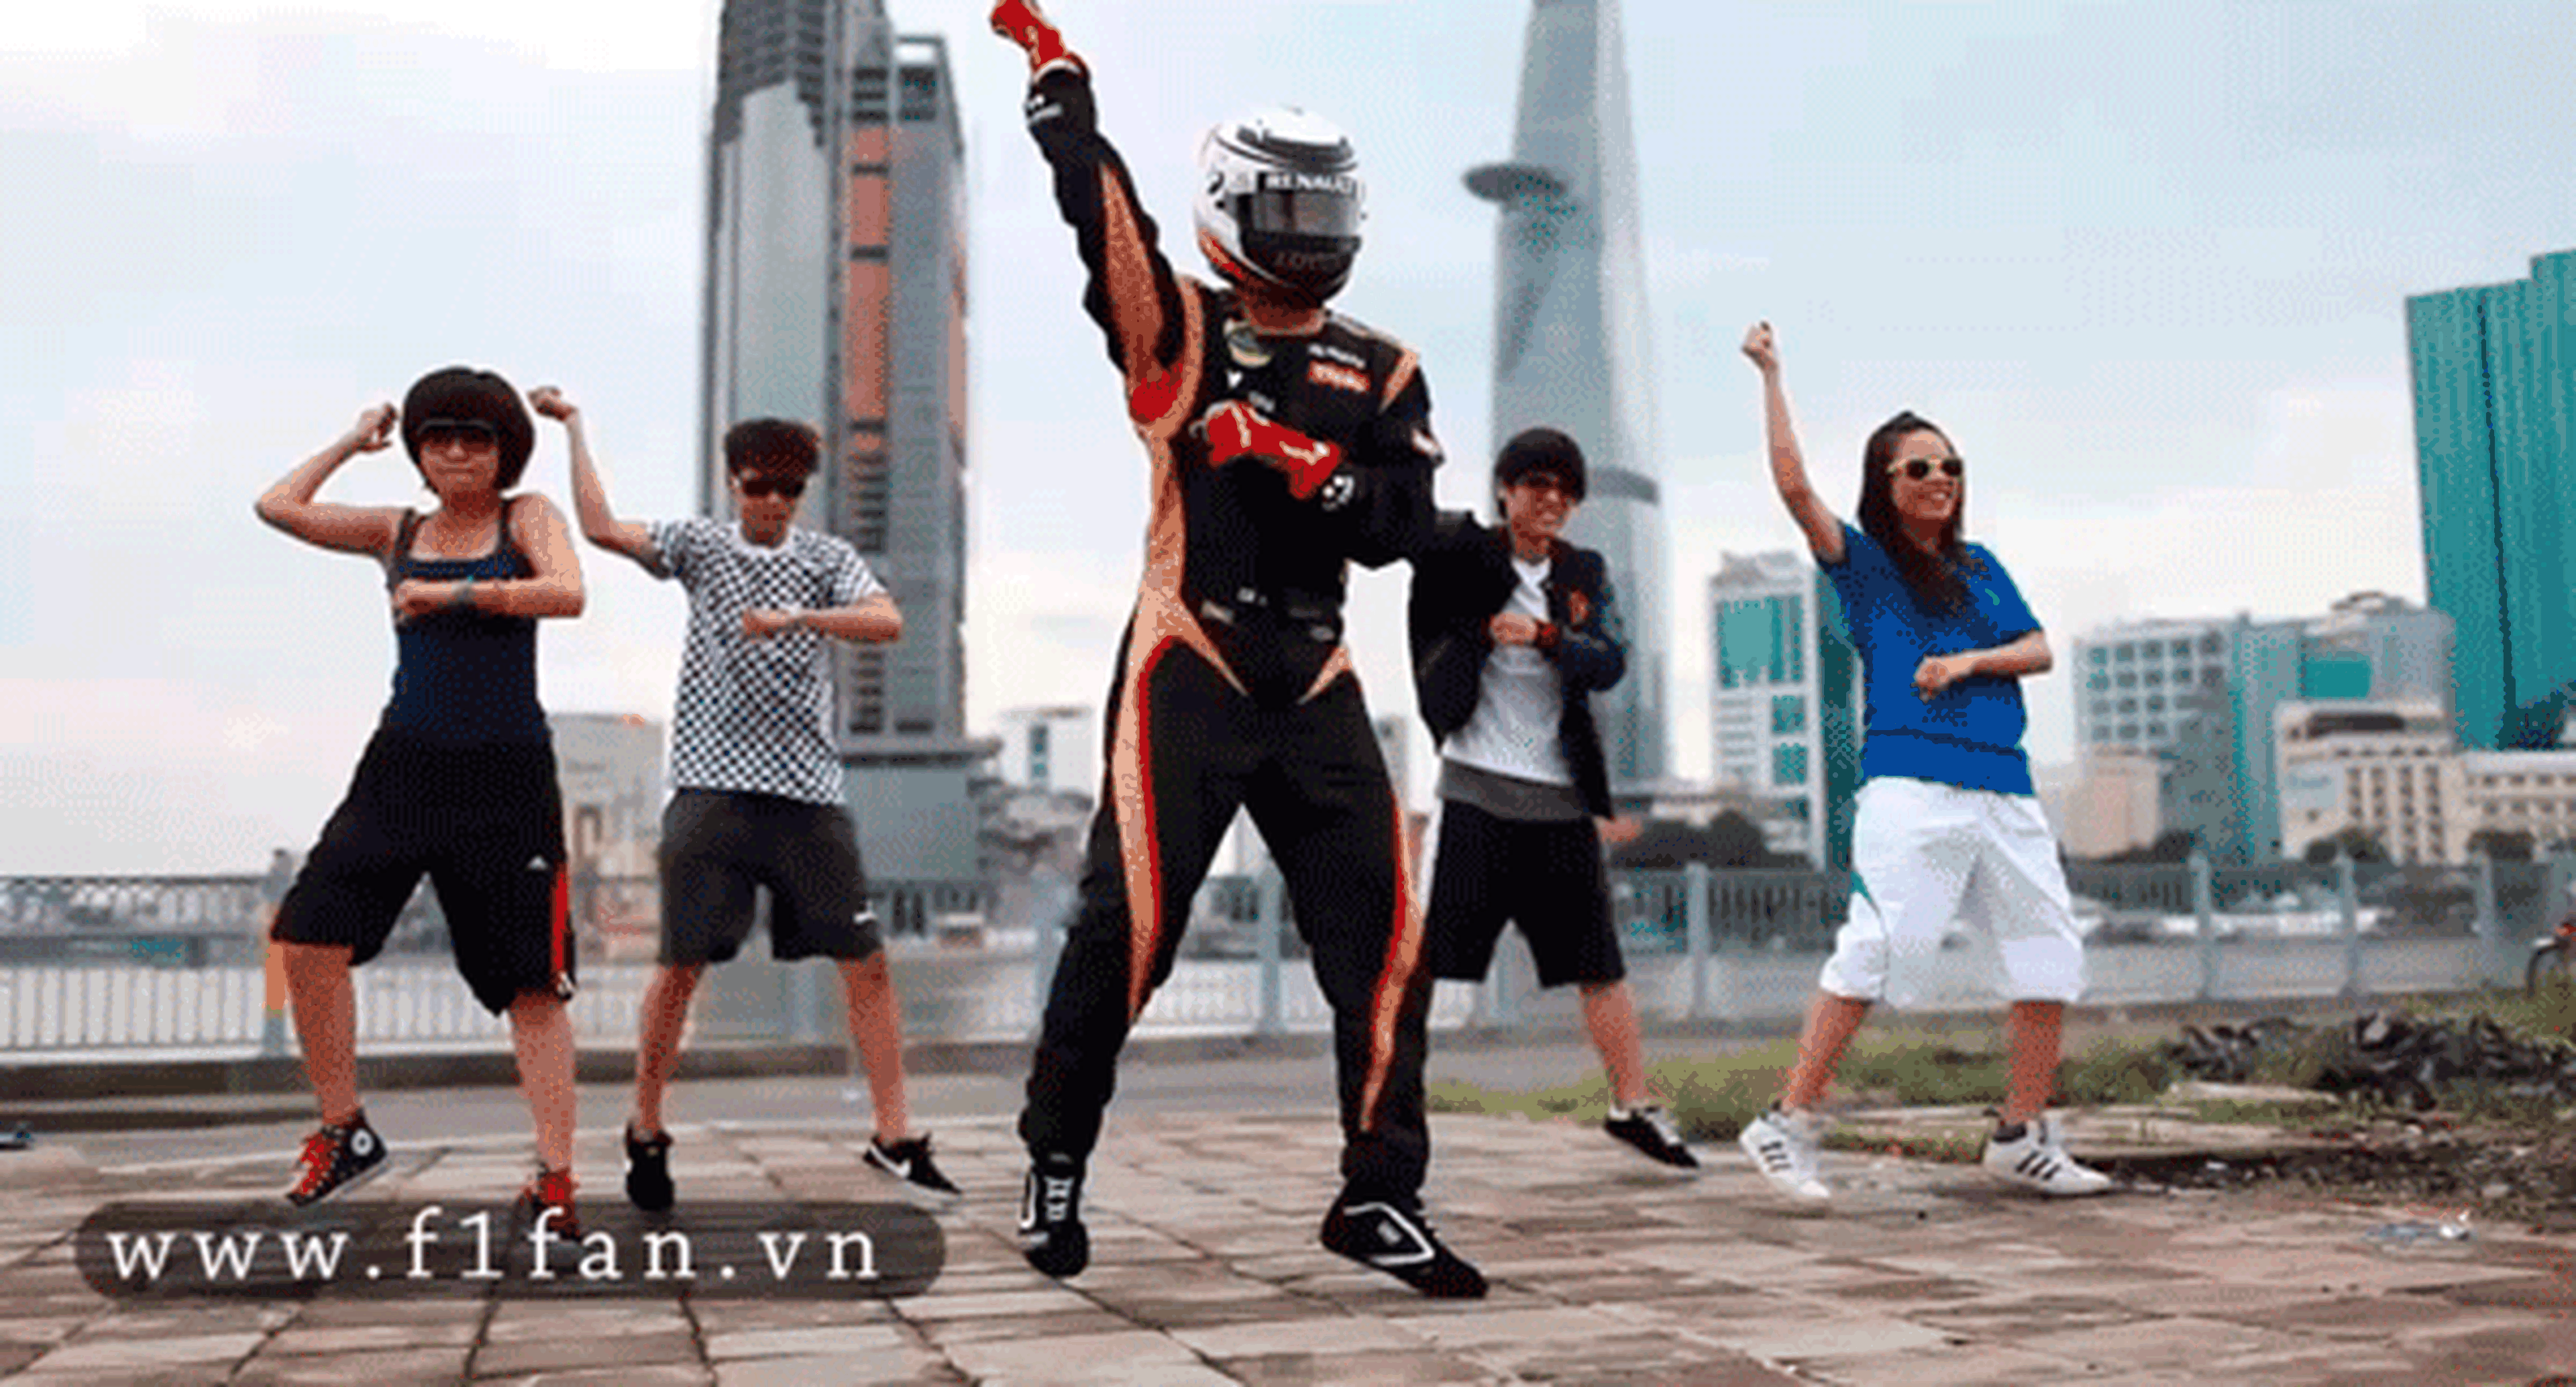 Kimi Raikkonen bailando en la calle